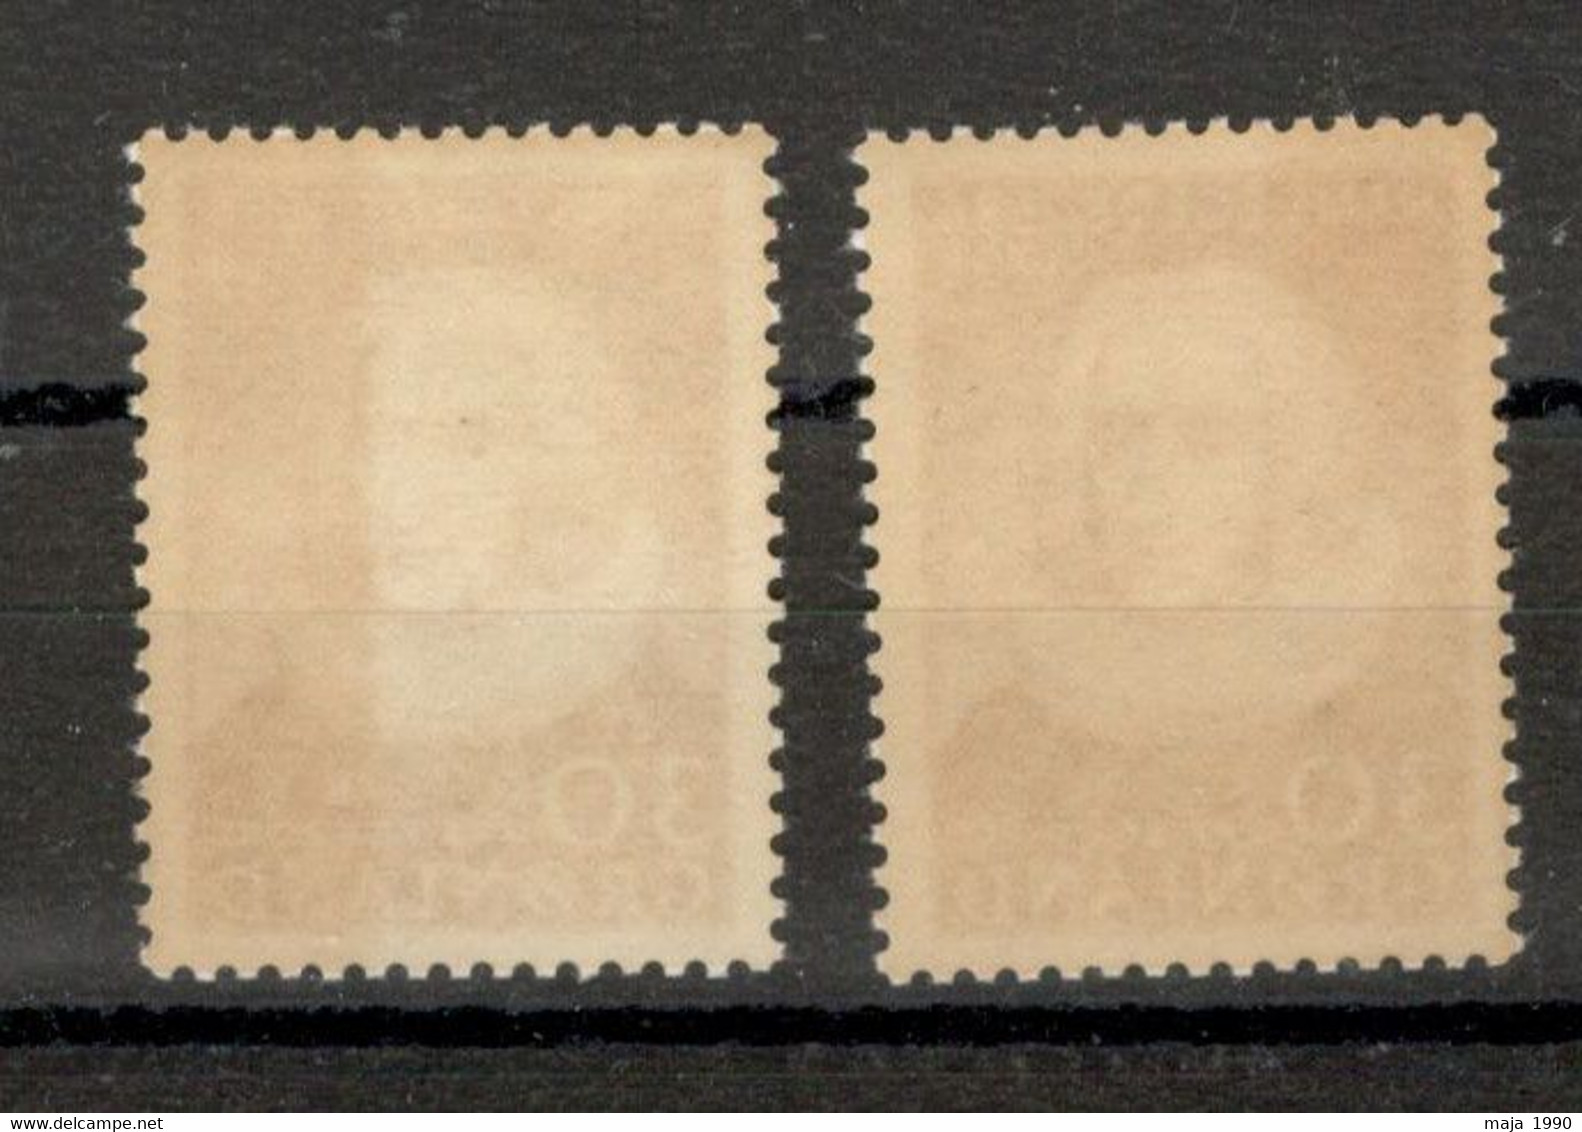 GREENLAND - 2 MNH STAMPS - HANS EGEDE - 1958 - Unused Stamps